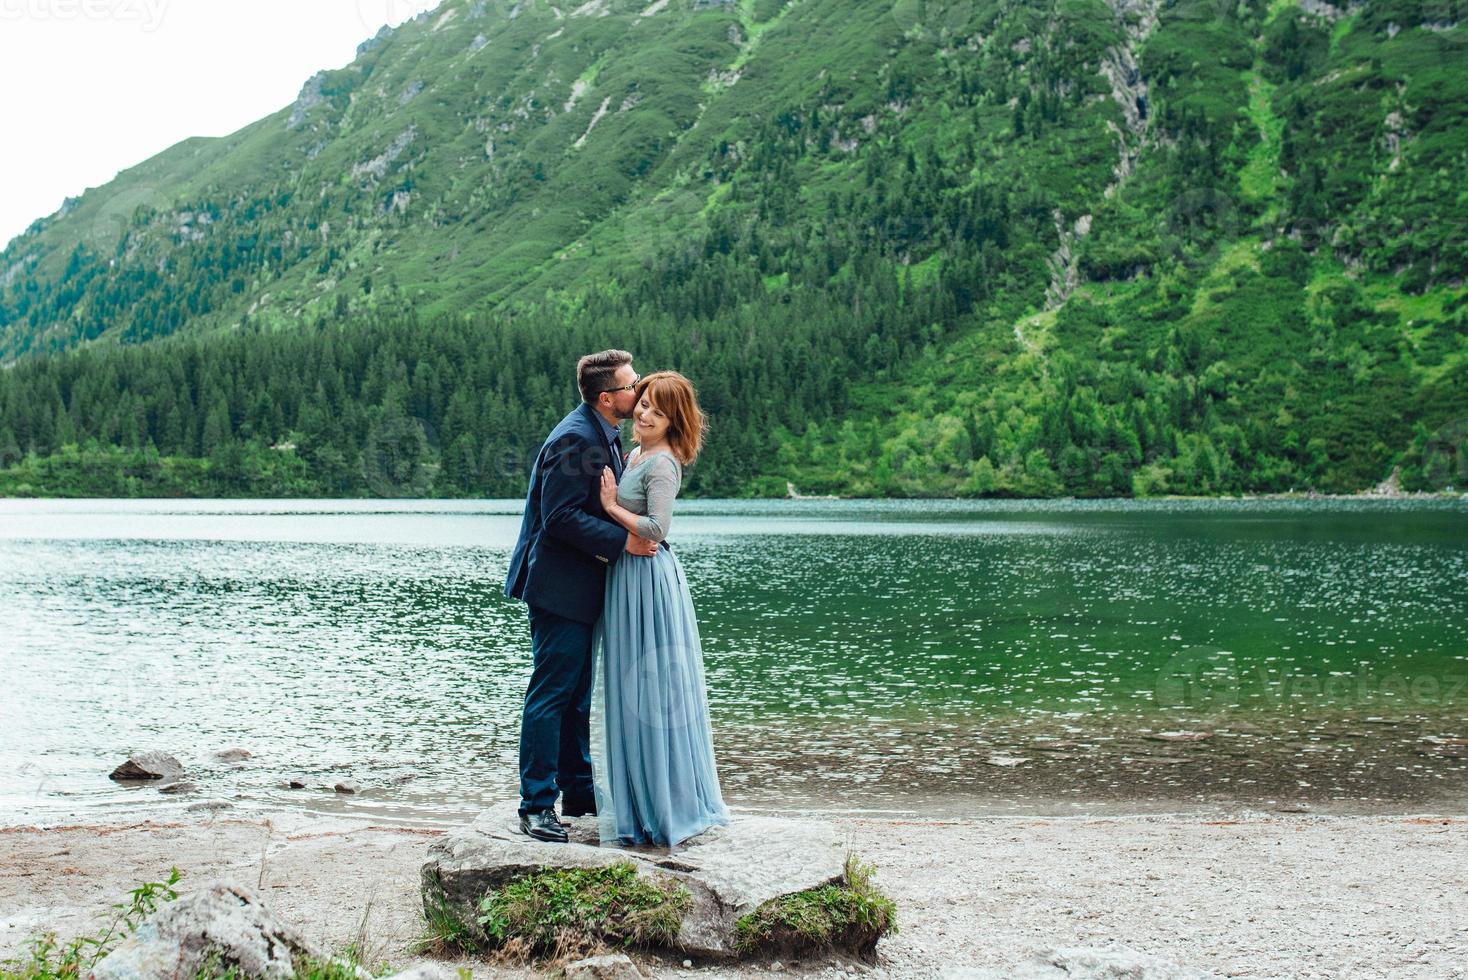 jovem casal passeando perto de um lago cercado por montanhas foto